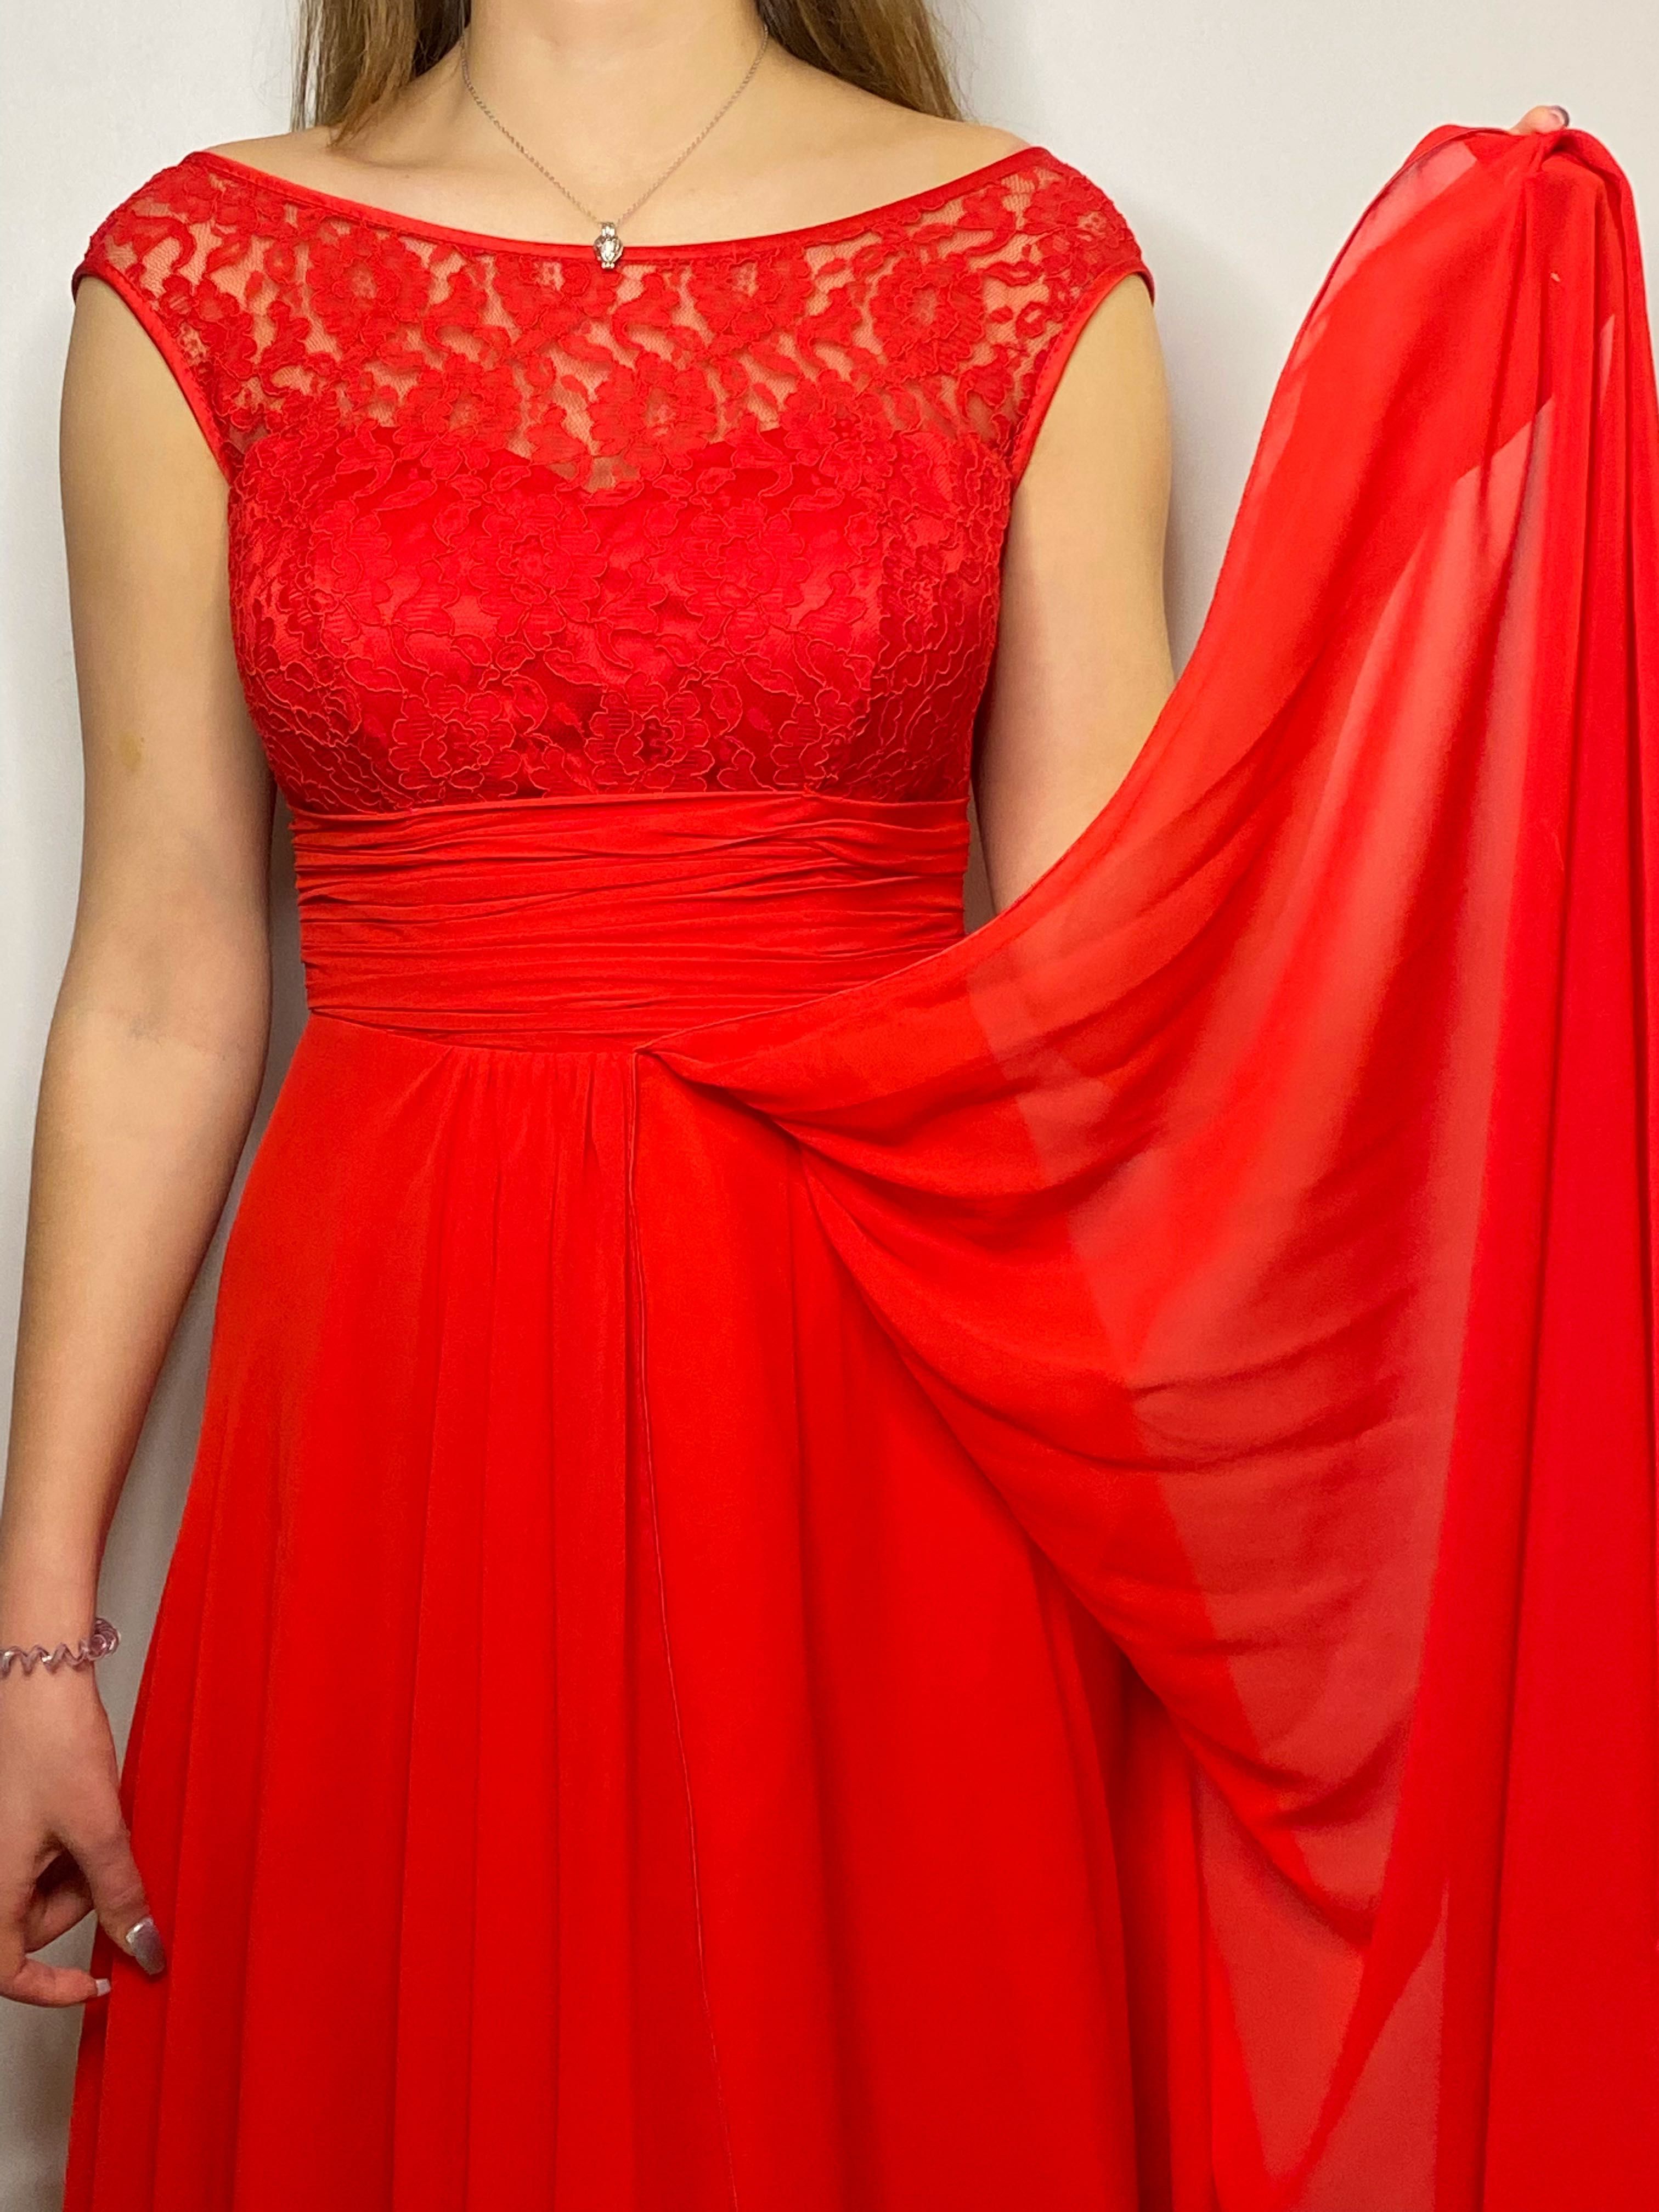 Выпускное платье / платье на выпускной / красное выпускное платье